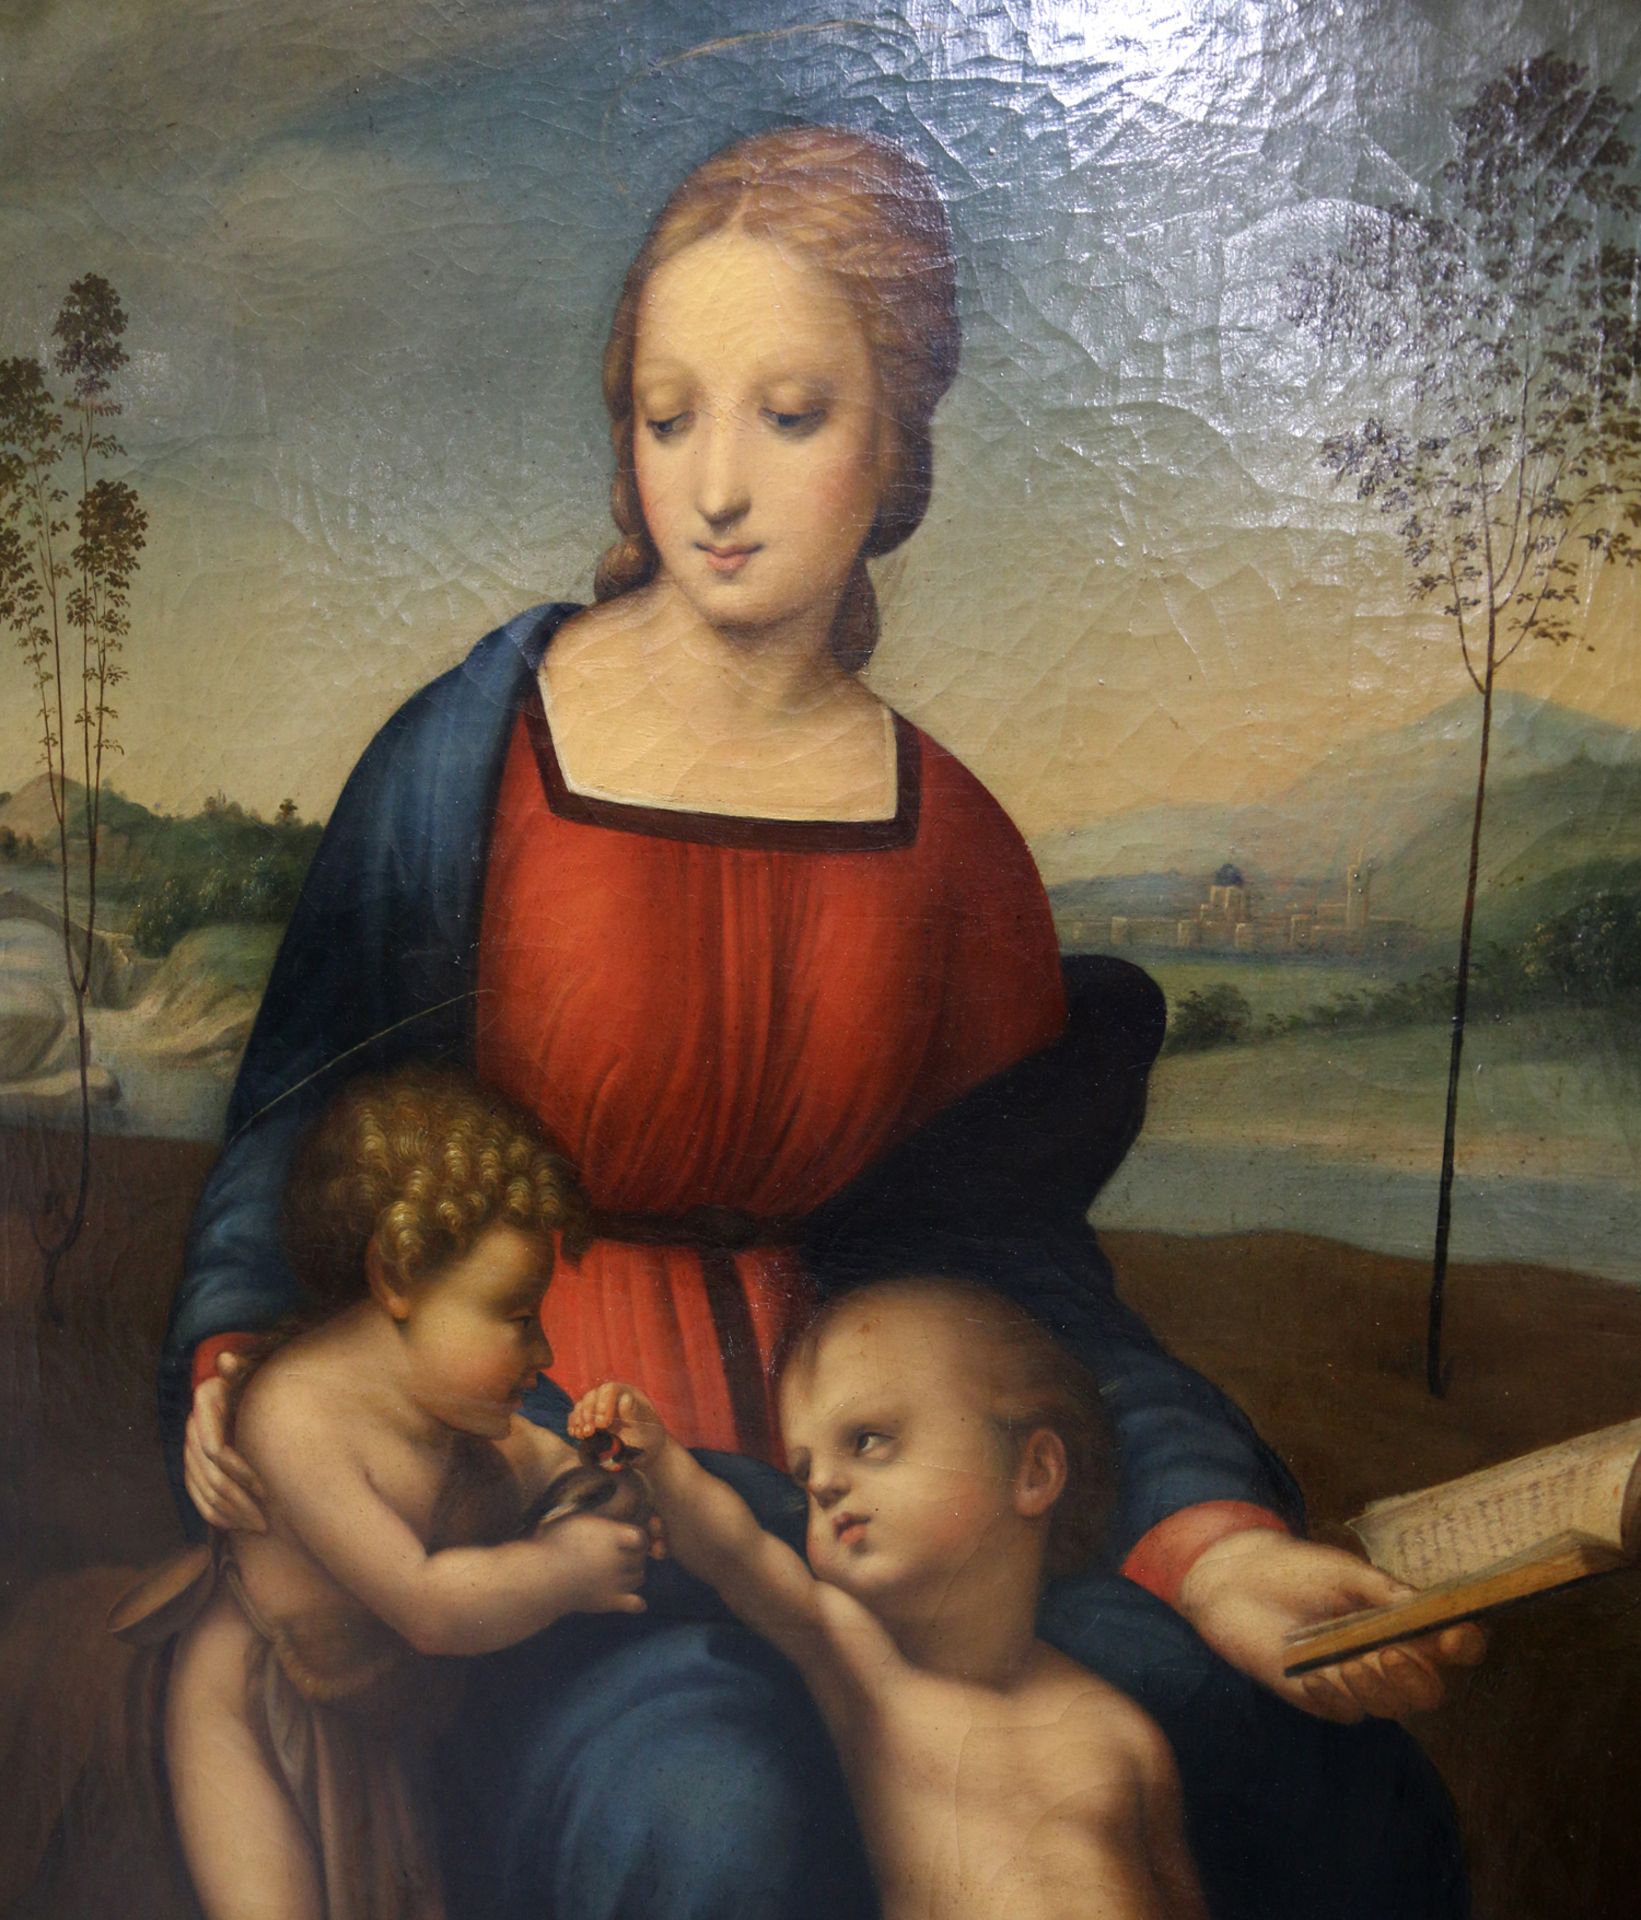 Kopie nach Raffael da Urbino - Madonna del Cardellino - Image 2 of 2